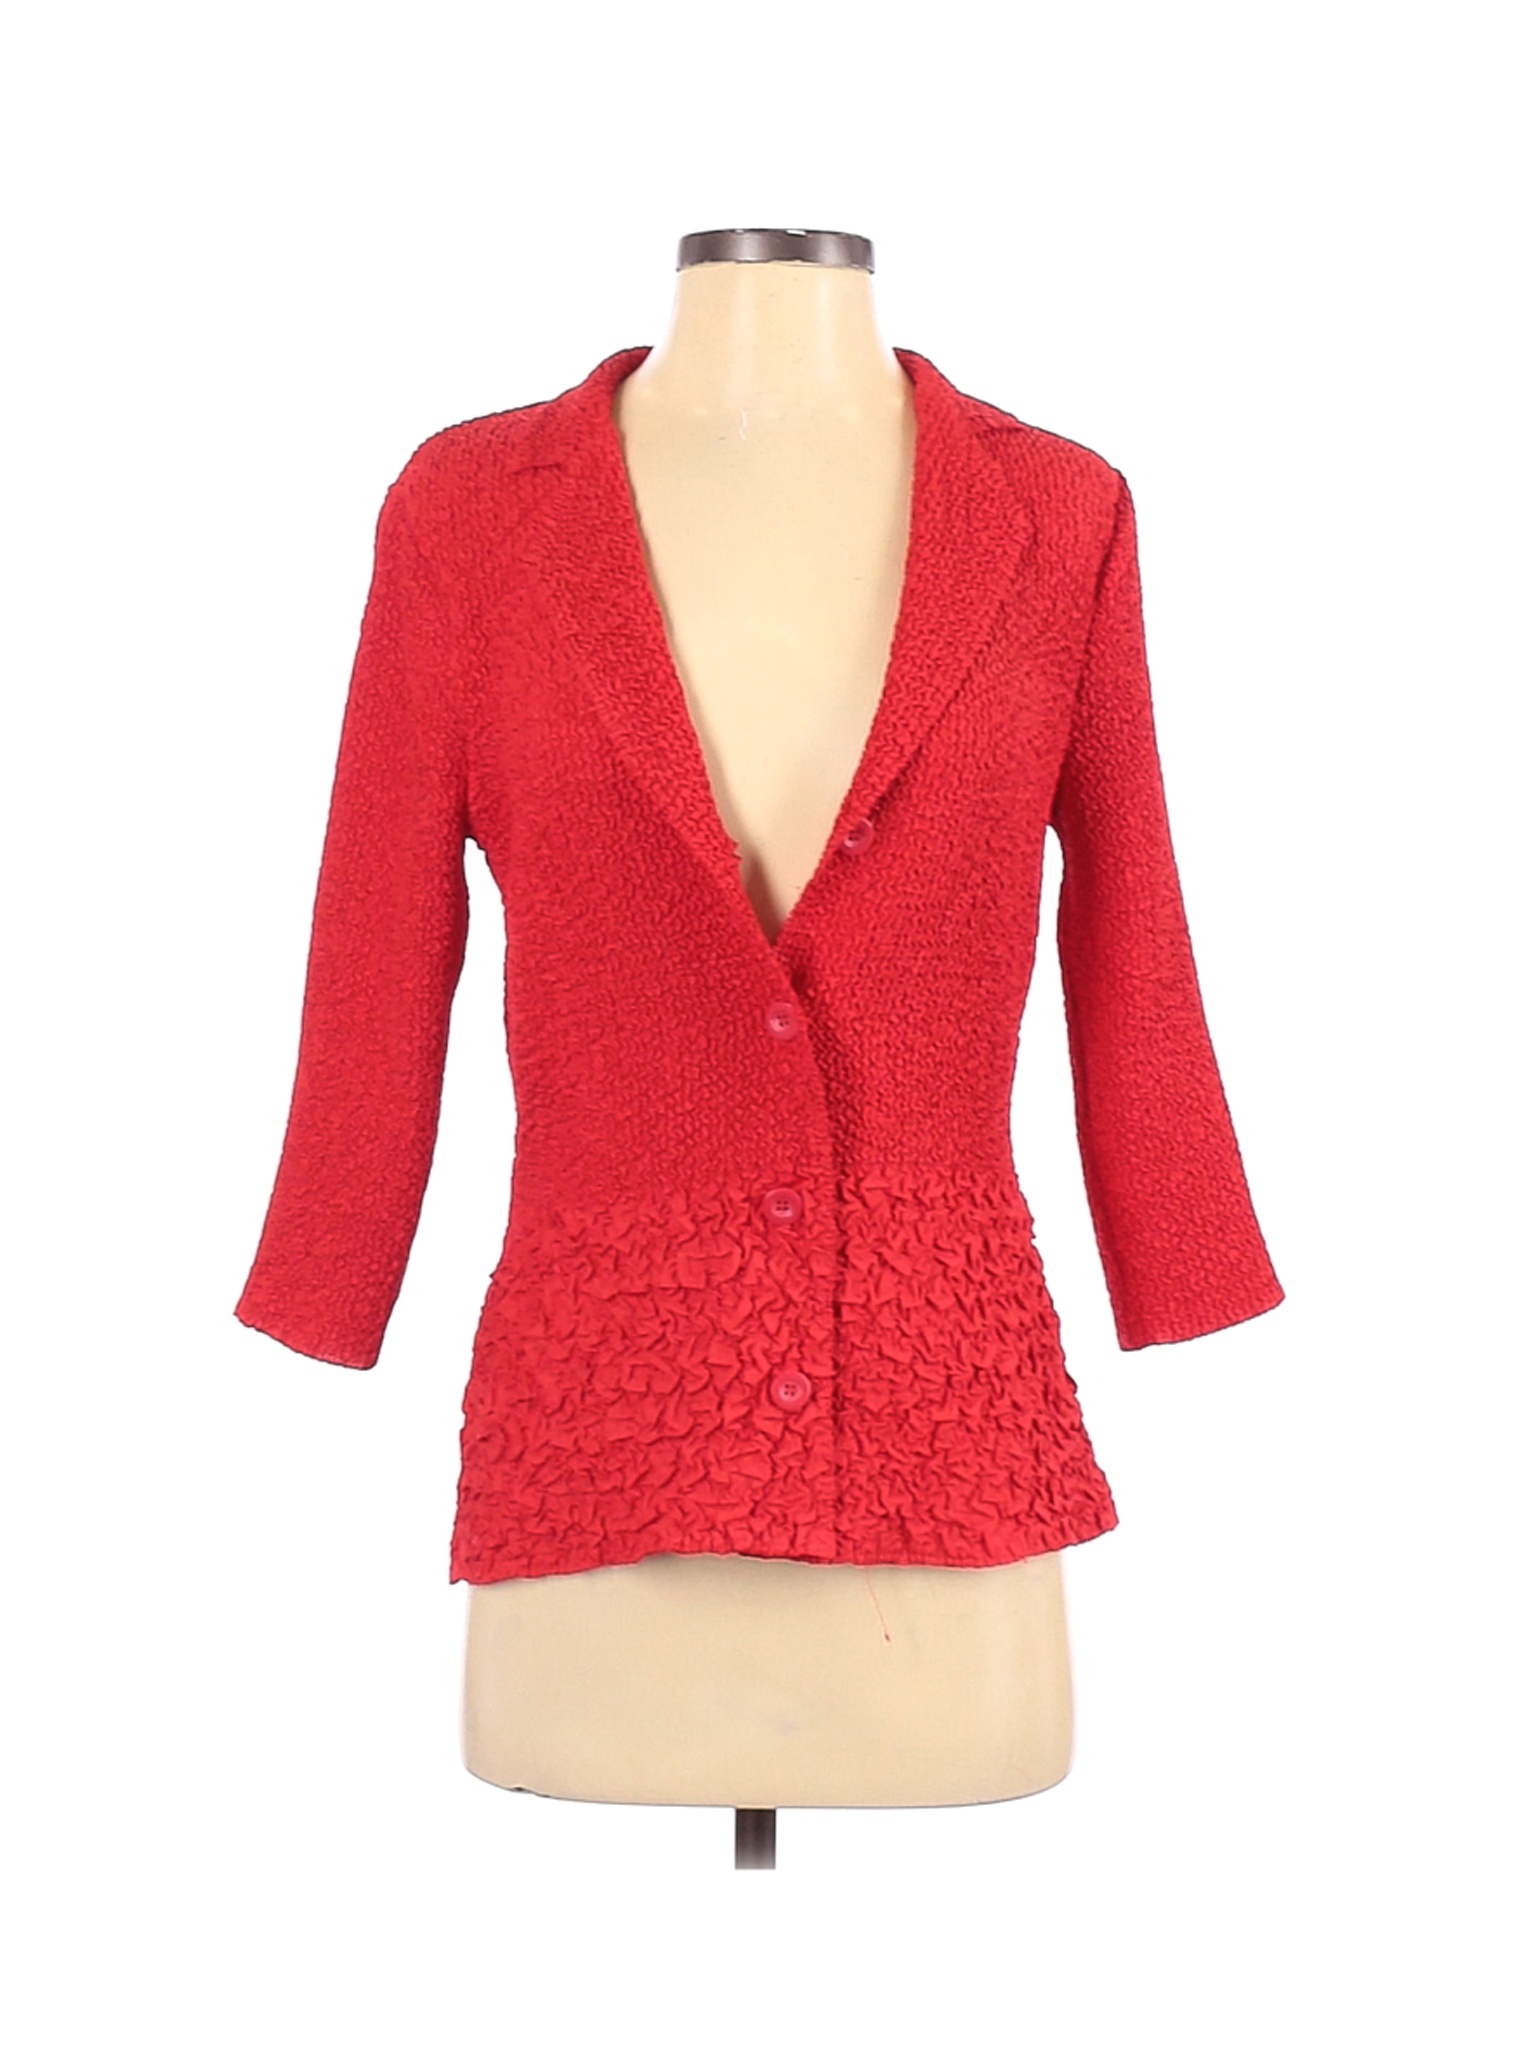 Joni B. Women Red Cardigan S | eBay